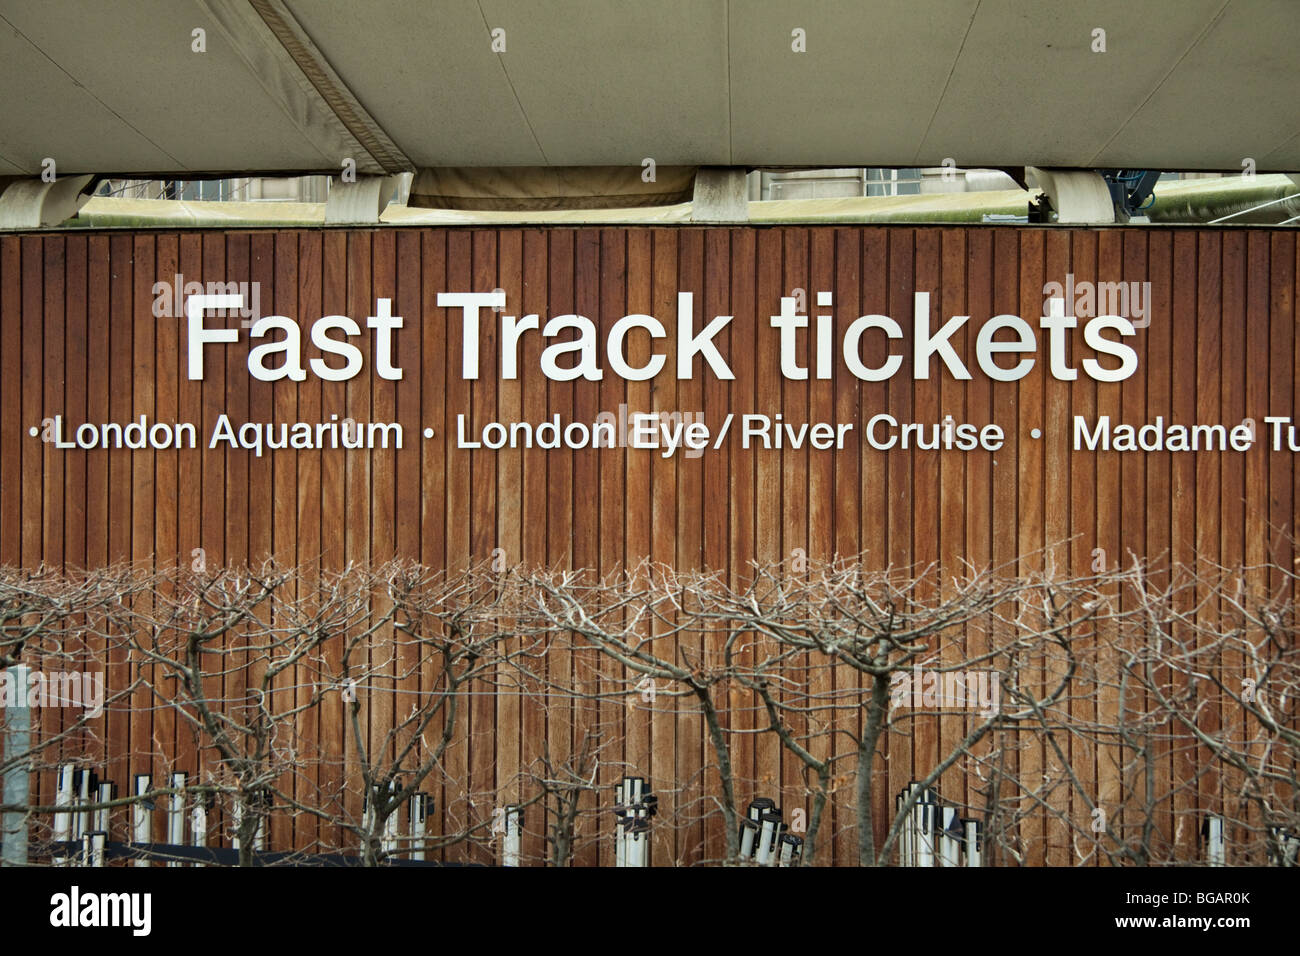 Voie rapide billetterie à Londres, en Angleterre, la vente de billets pour l'Aquarium de Londres, le London Eye, Madame Tussauds. Banque D'Images